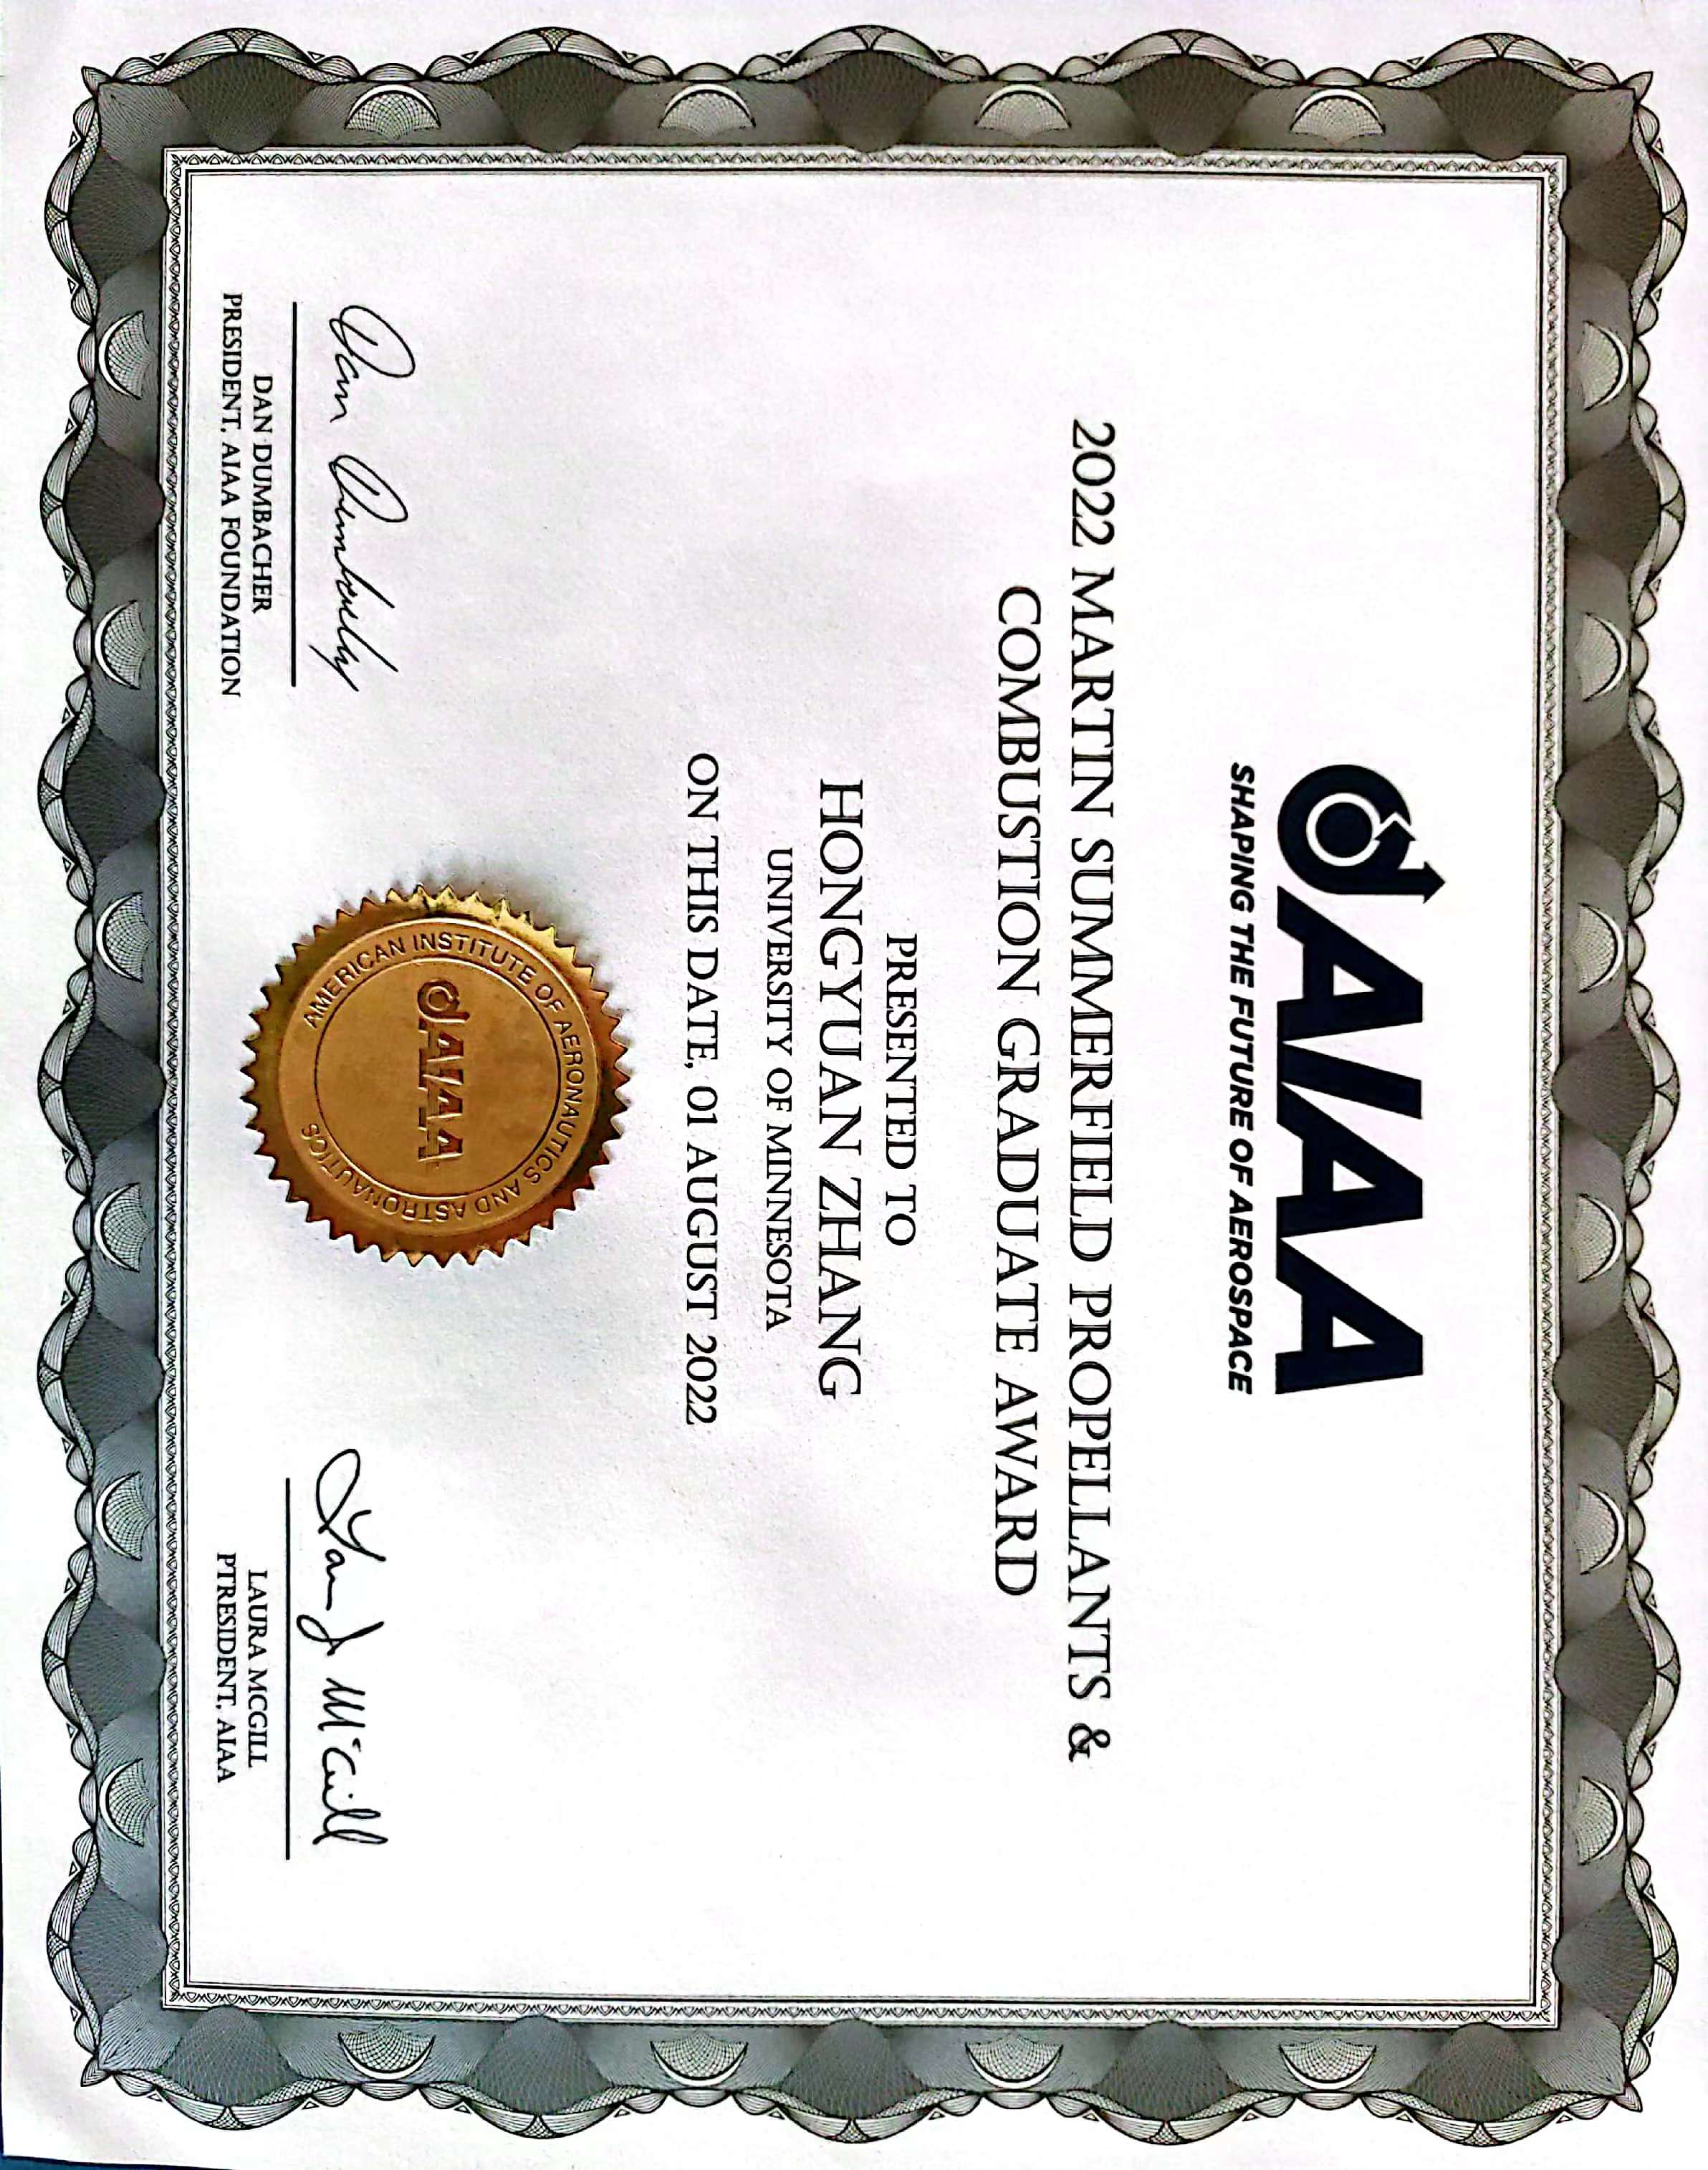 AIAA award certificate